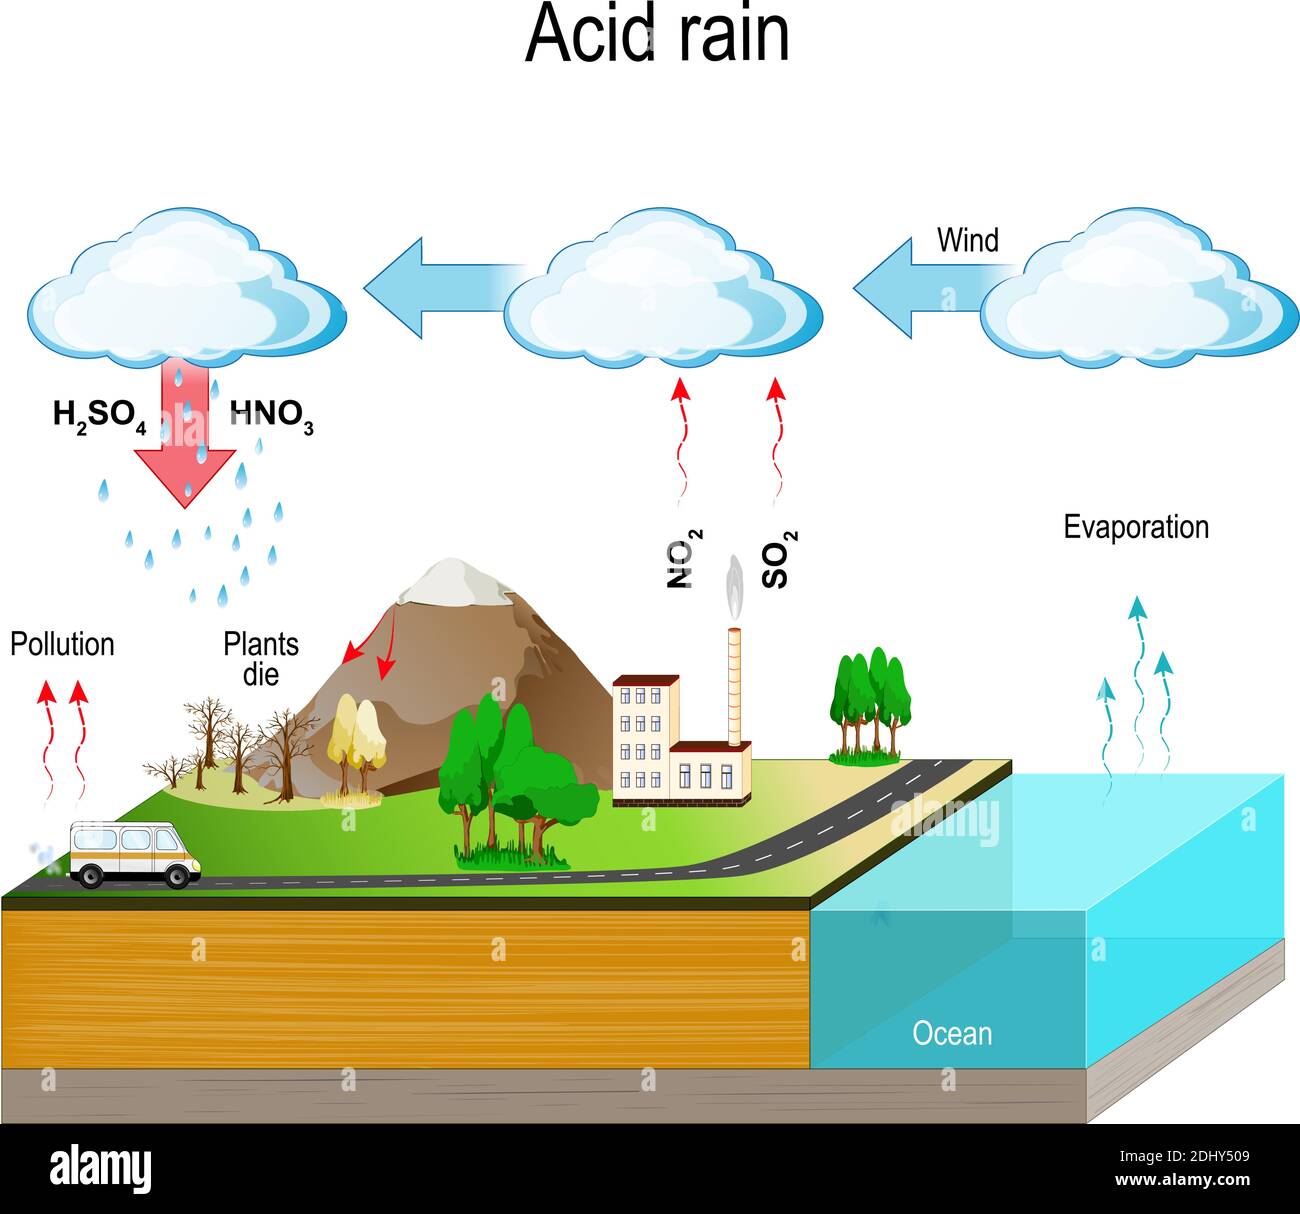 Les pluies acides sont causées par des émissions de dioxyde de soufre et d'oxyde d'azote, qui réagissent avec les molécules d'eau dans l'atmosphère pour produire des acides. Illustration de Vecteur